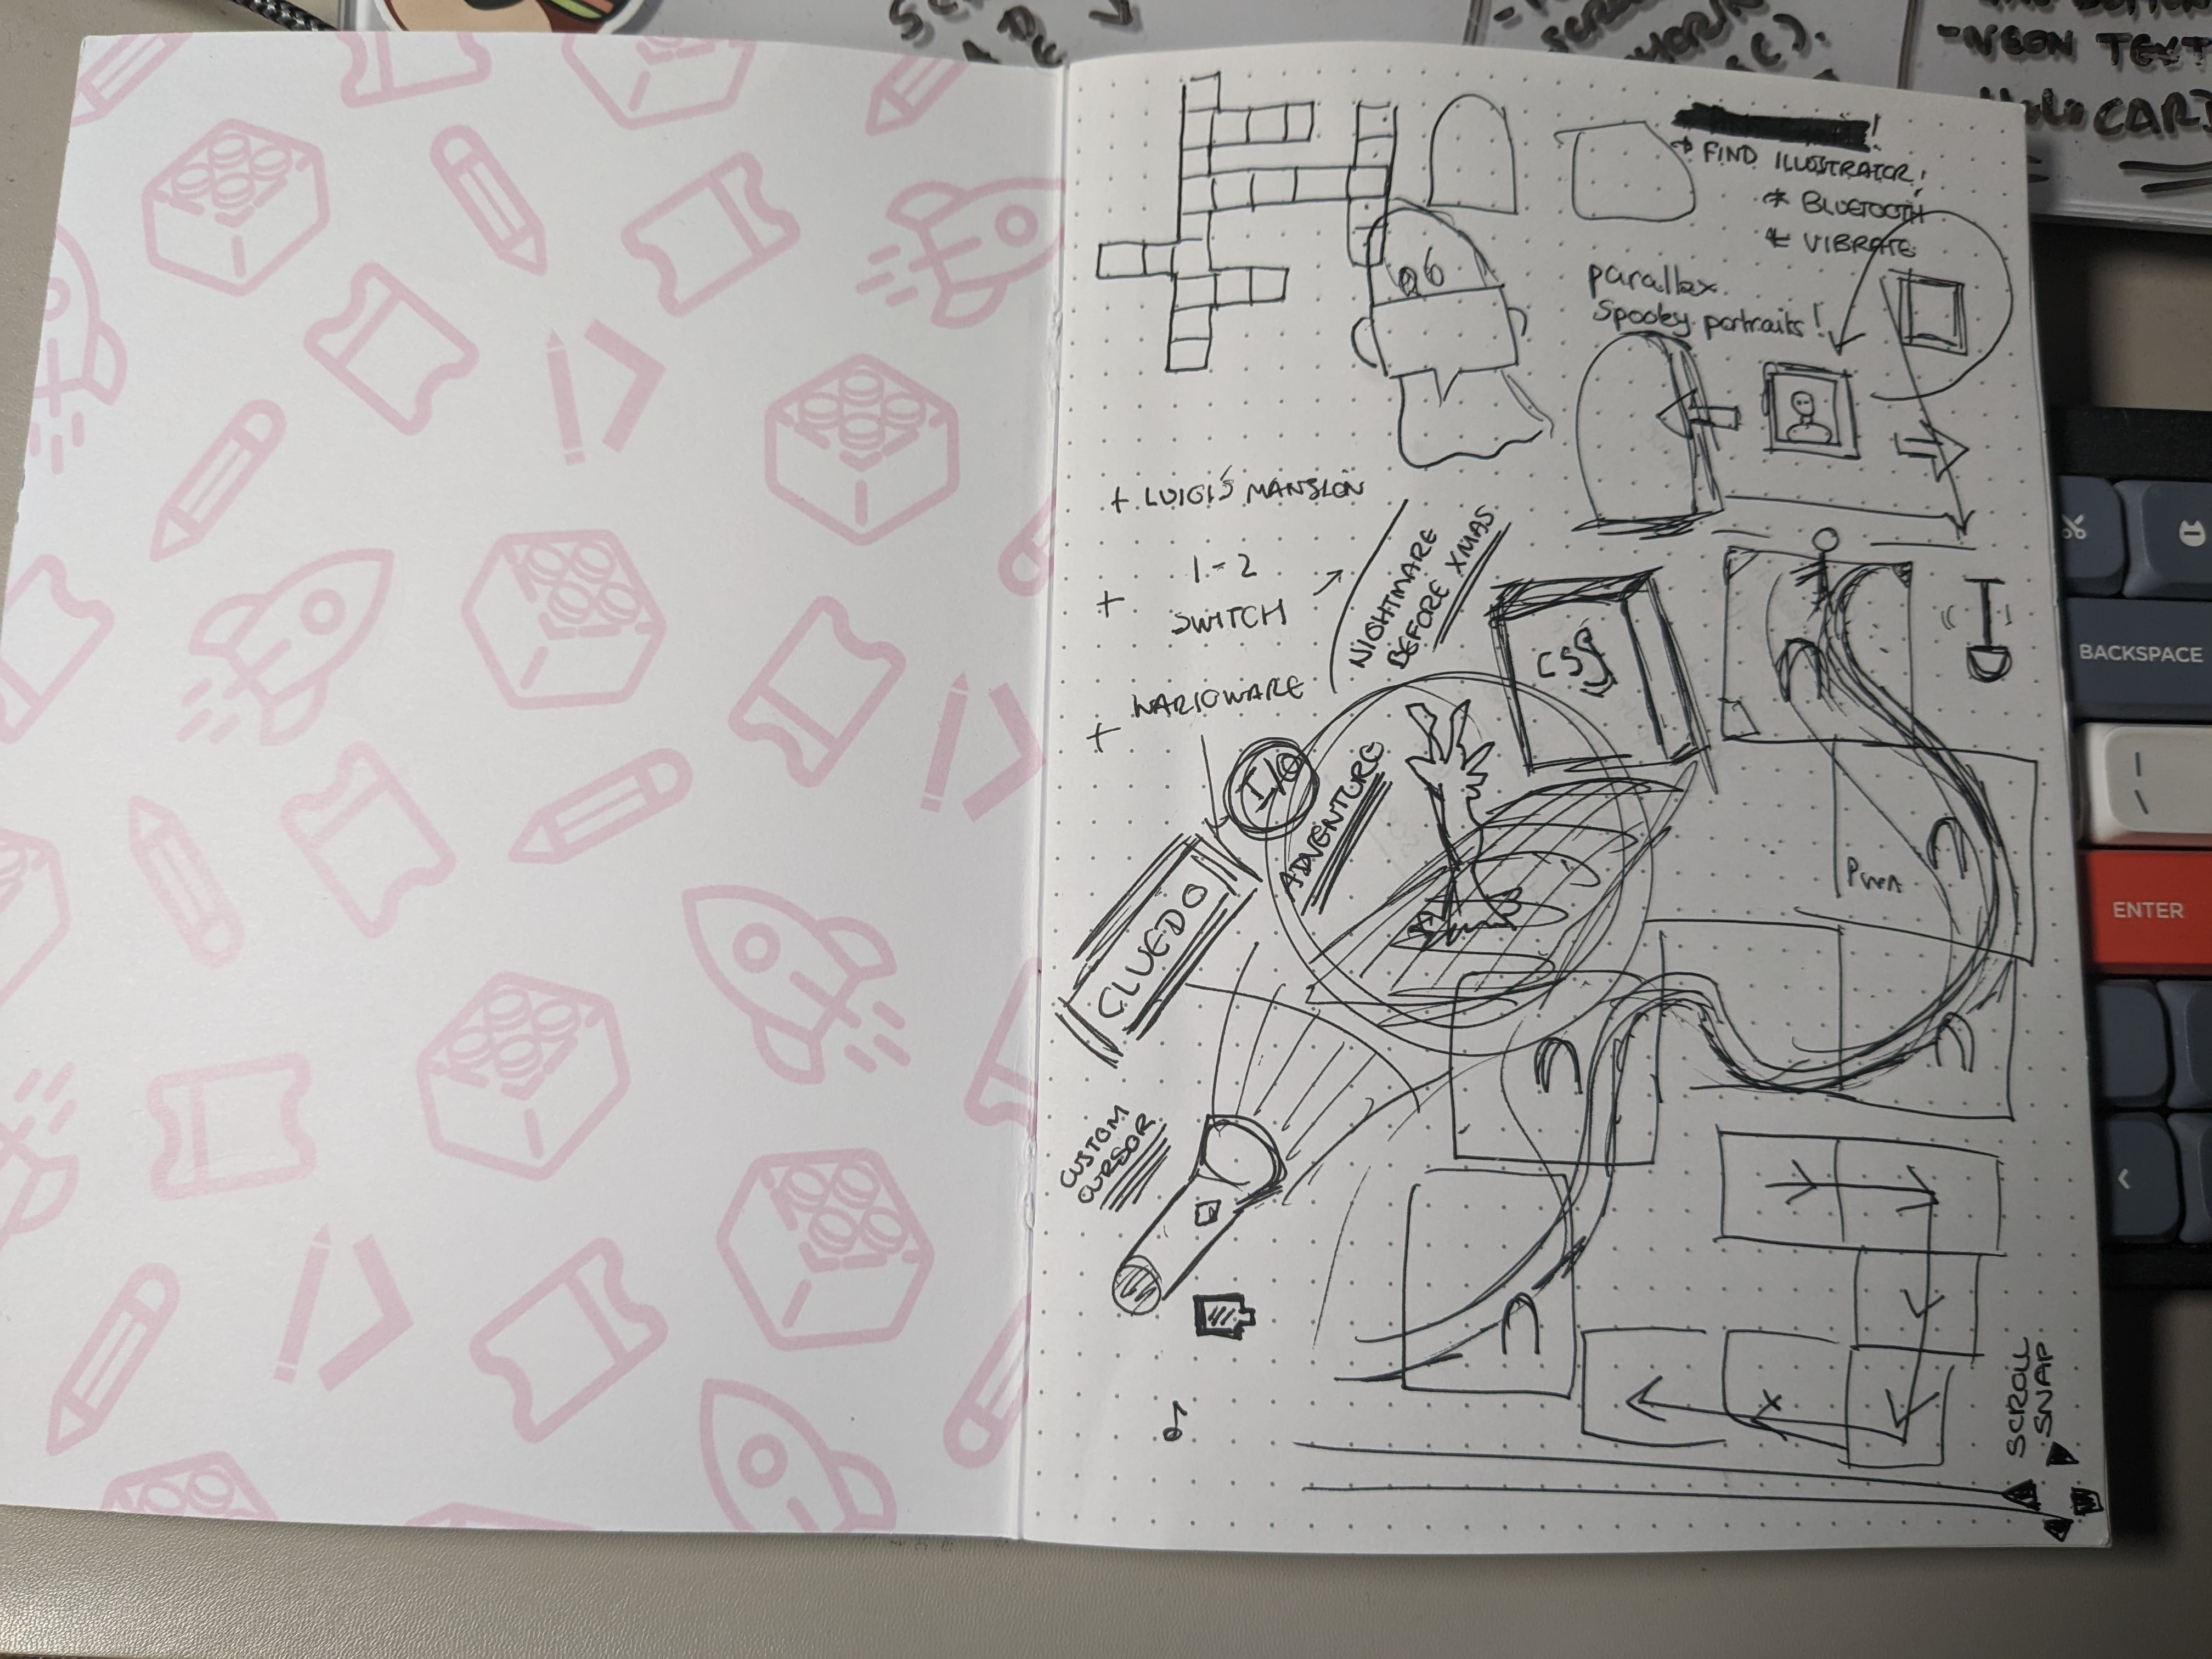 Um caderno está em uma mesa com vários doodles e rabiscos relacionados ao projeto.